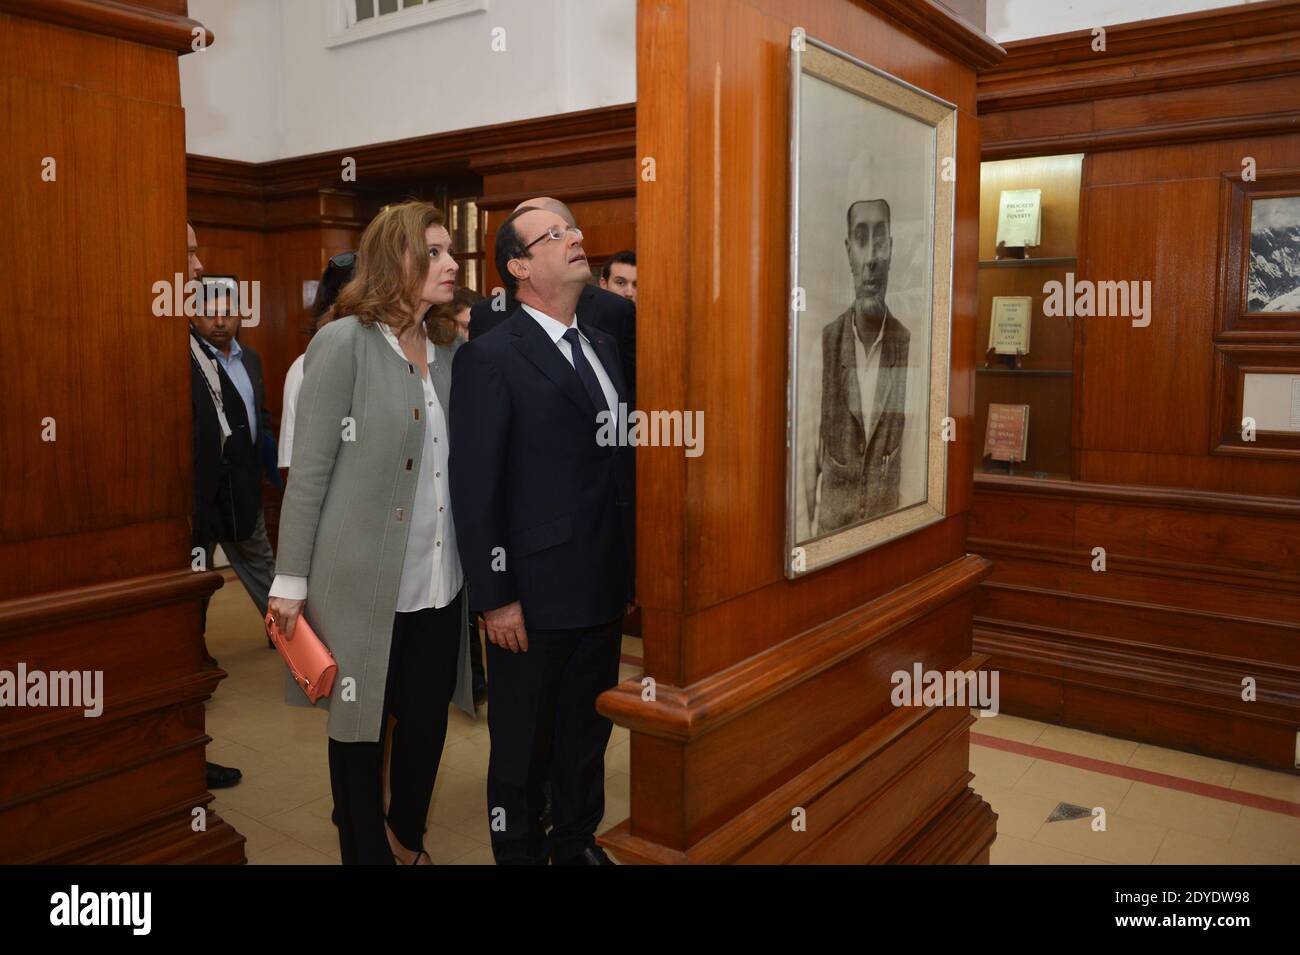 Il presidente francese Francois Hollande e Valerie Trierweiler visitano il Museo Nehru, a Nuova Delhi, India, il 15 febbraio 2013. Foto di Christophe Guibbaud/ABACAPRESS.COM Foto Stock